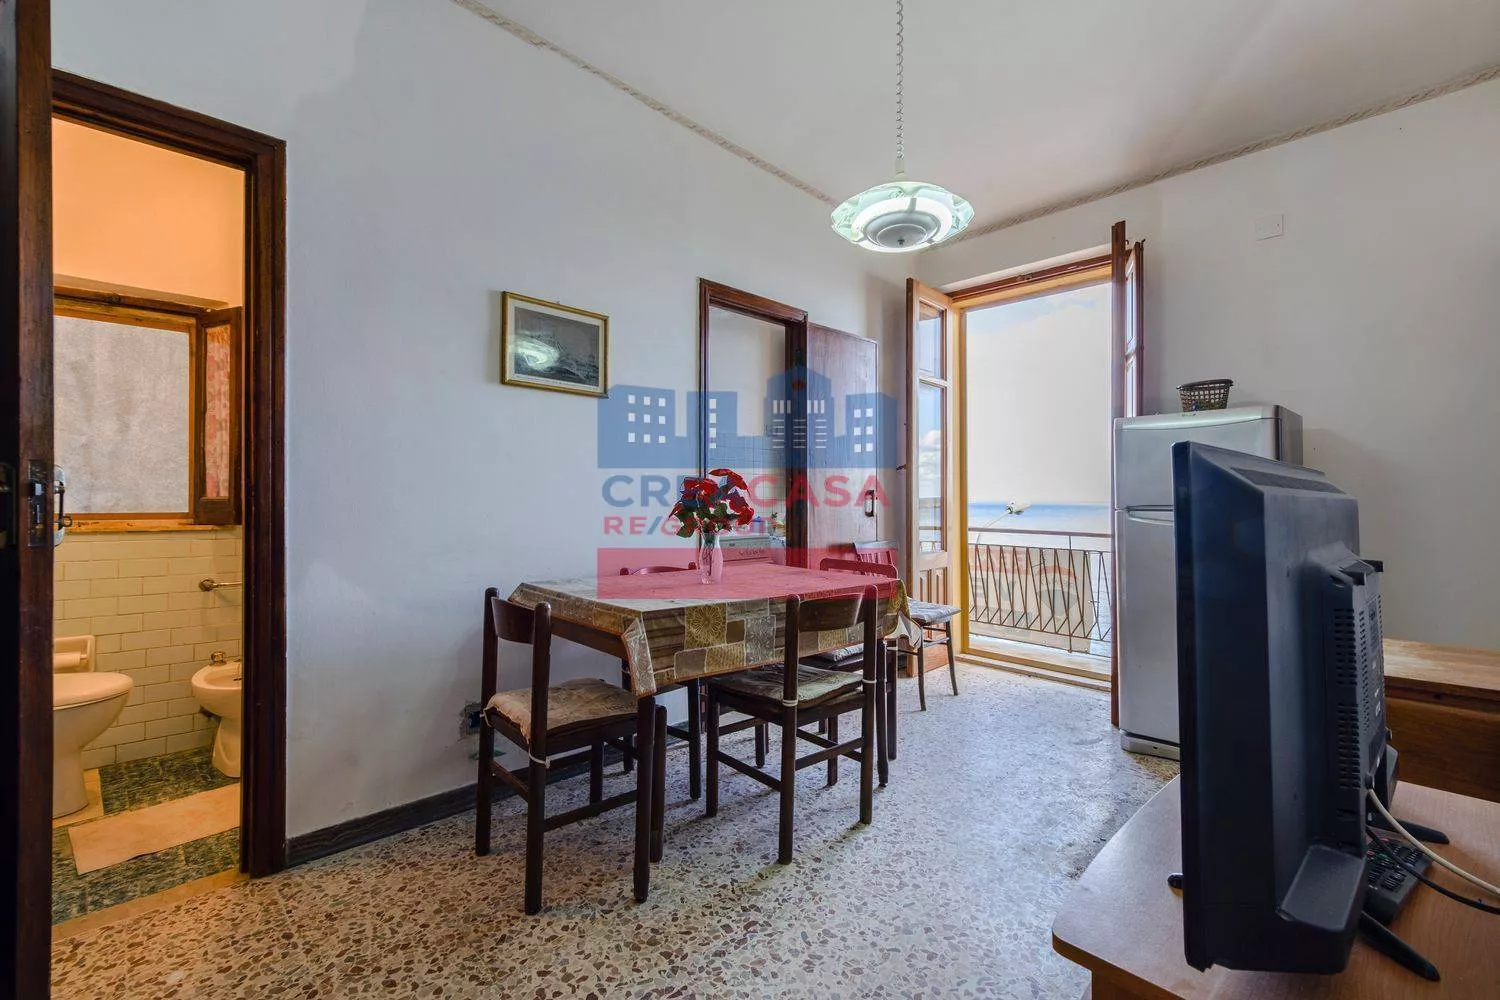 Immagine per Appartamento in vendita a Giardini-Naxos via naxos